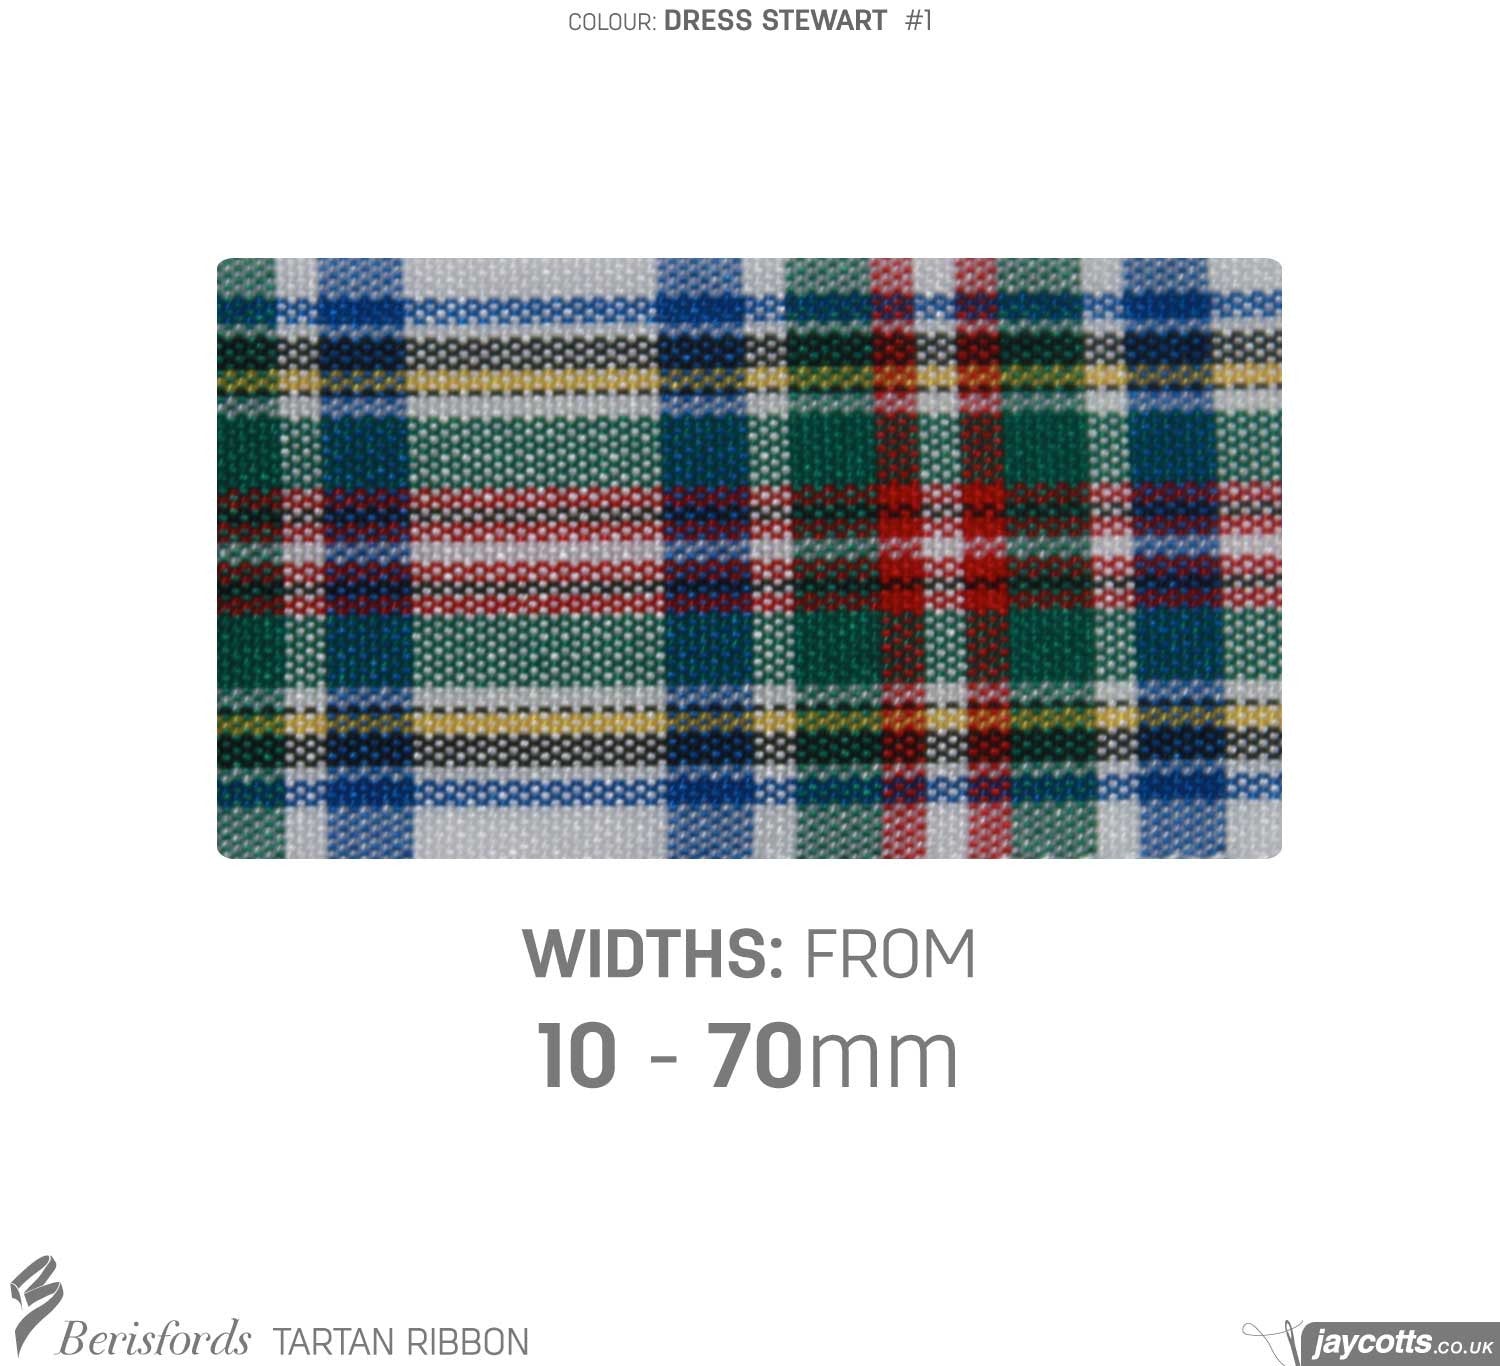 Berisfords Tartan Ribbon: #1 Dress Stewart from Jaycotts Sewing Supplies